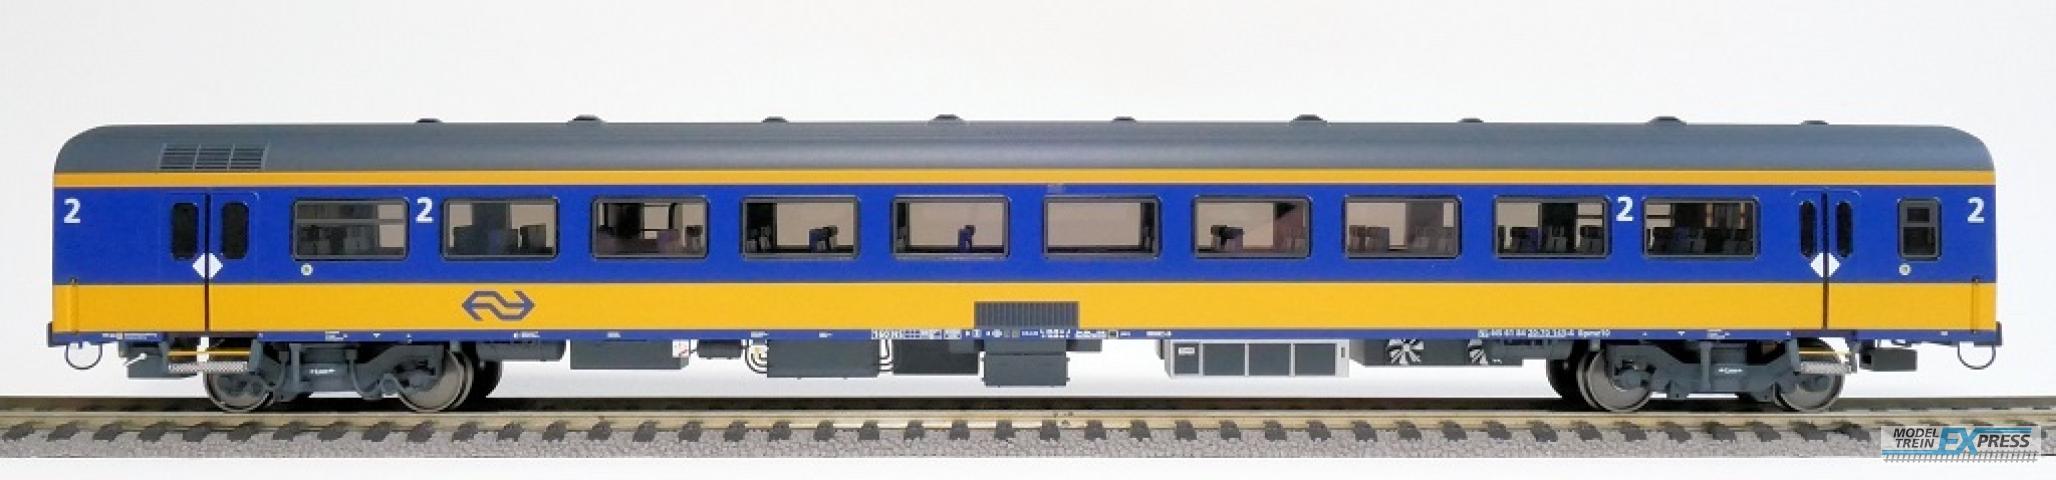 Exact-train 11009 NS ICRm Amsterdam - Rotterdam für den Inlandseinsatz Reisezugwagen Bpmz10 (Farbe Gelb / Blau) , Ep. VI